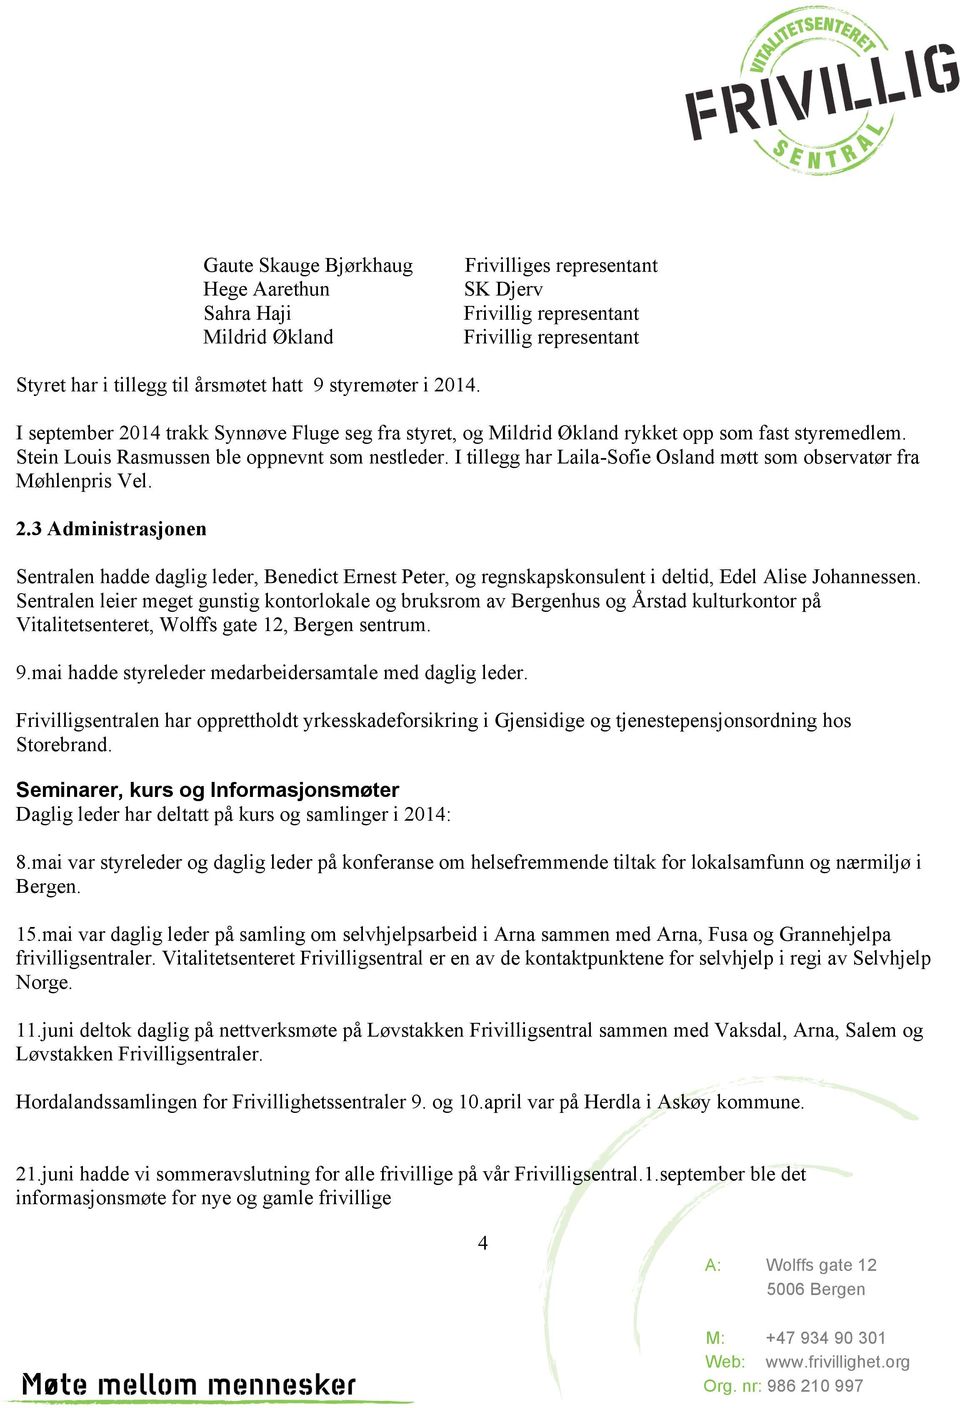 Markedsføring Følgende markedsføringstiltak ble gjennomført i 2014 Lagt ut informasjon på nettsiden til Frivilligsentral og Bergen Kommune Distribuert plakater og informasjonsfoldere Holdt foredrag